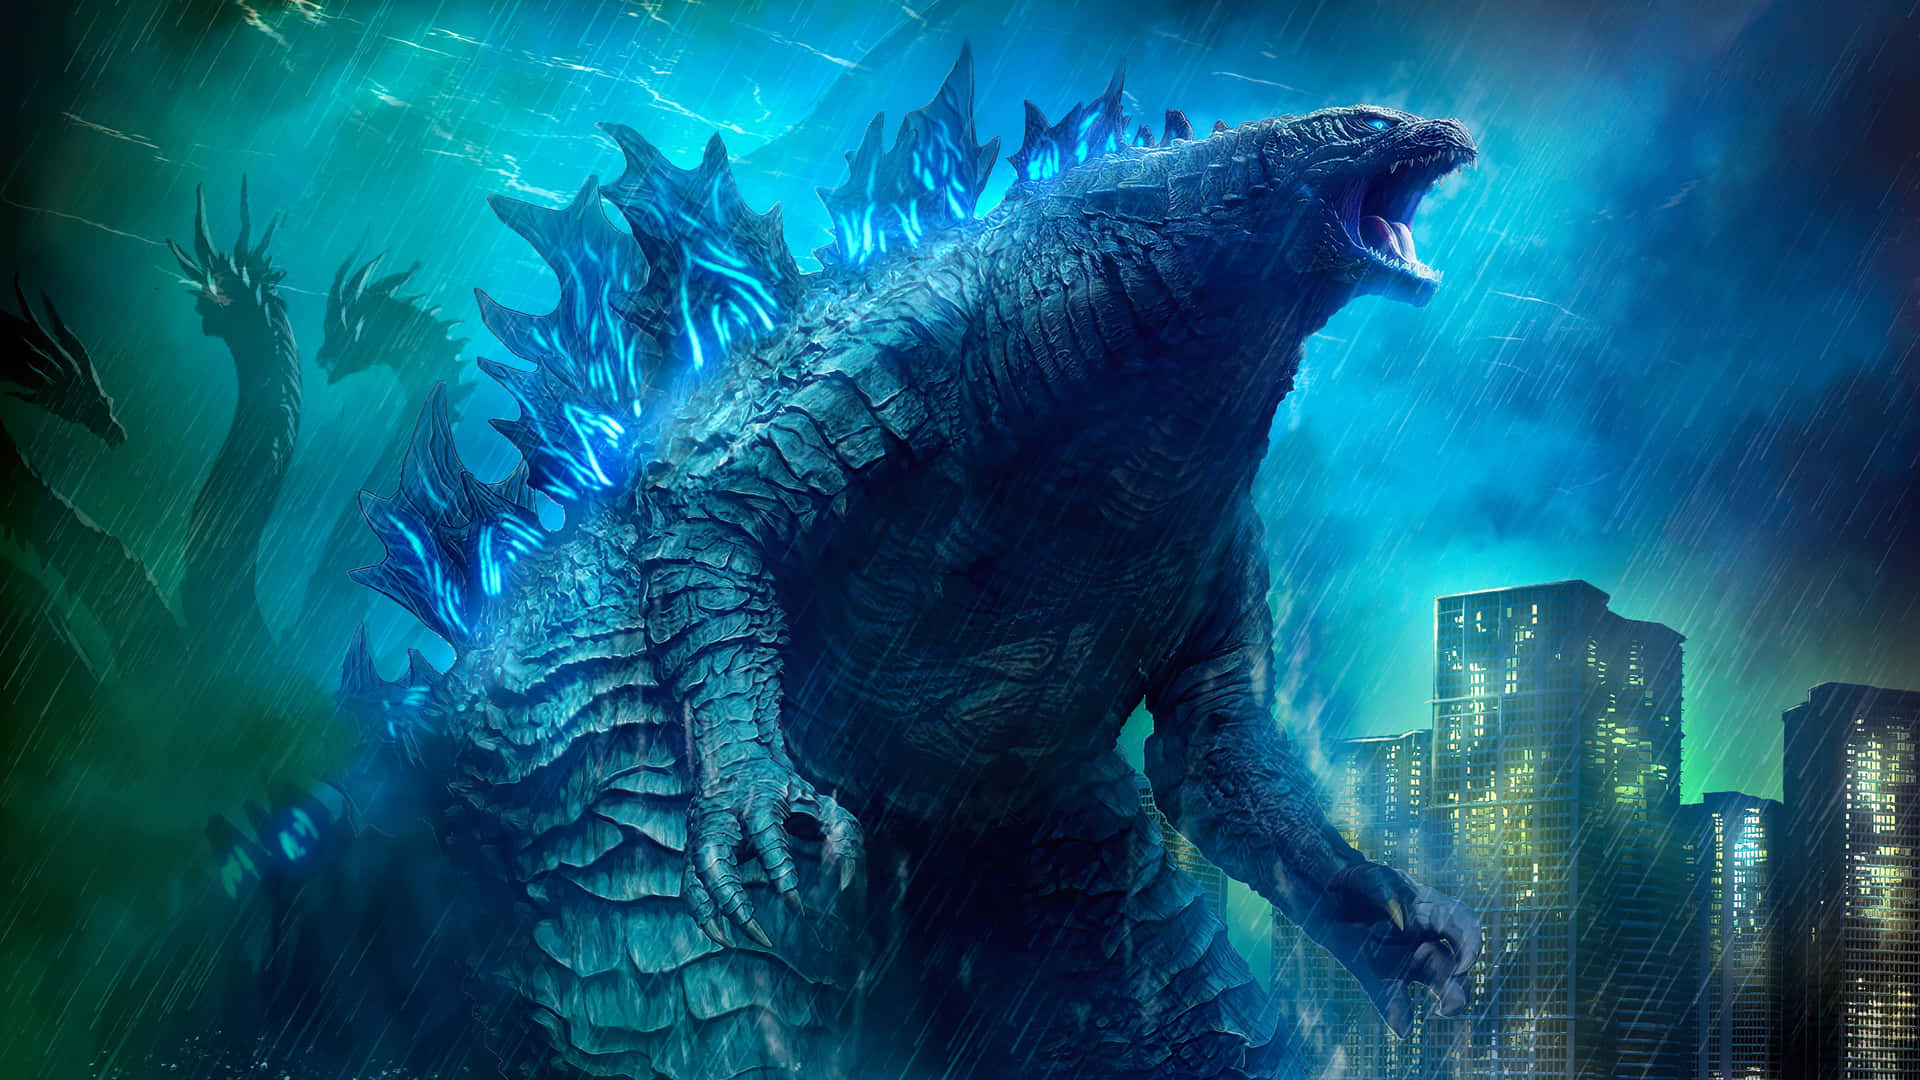 Godzillain Der Bucht Von Tokyo